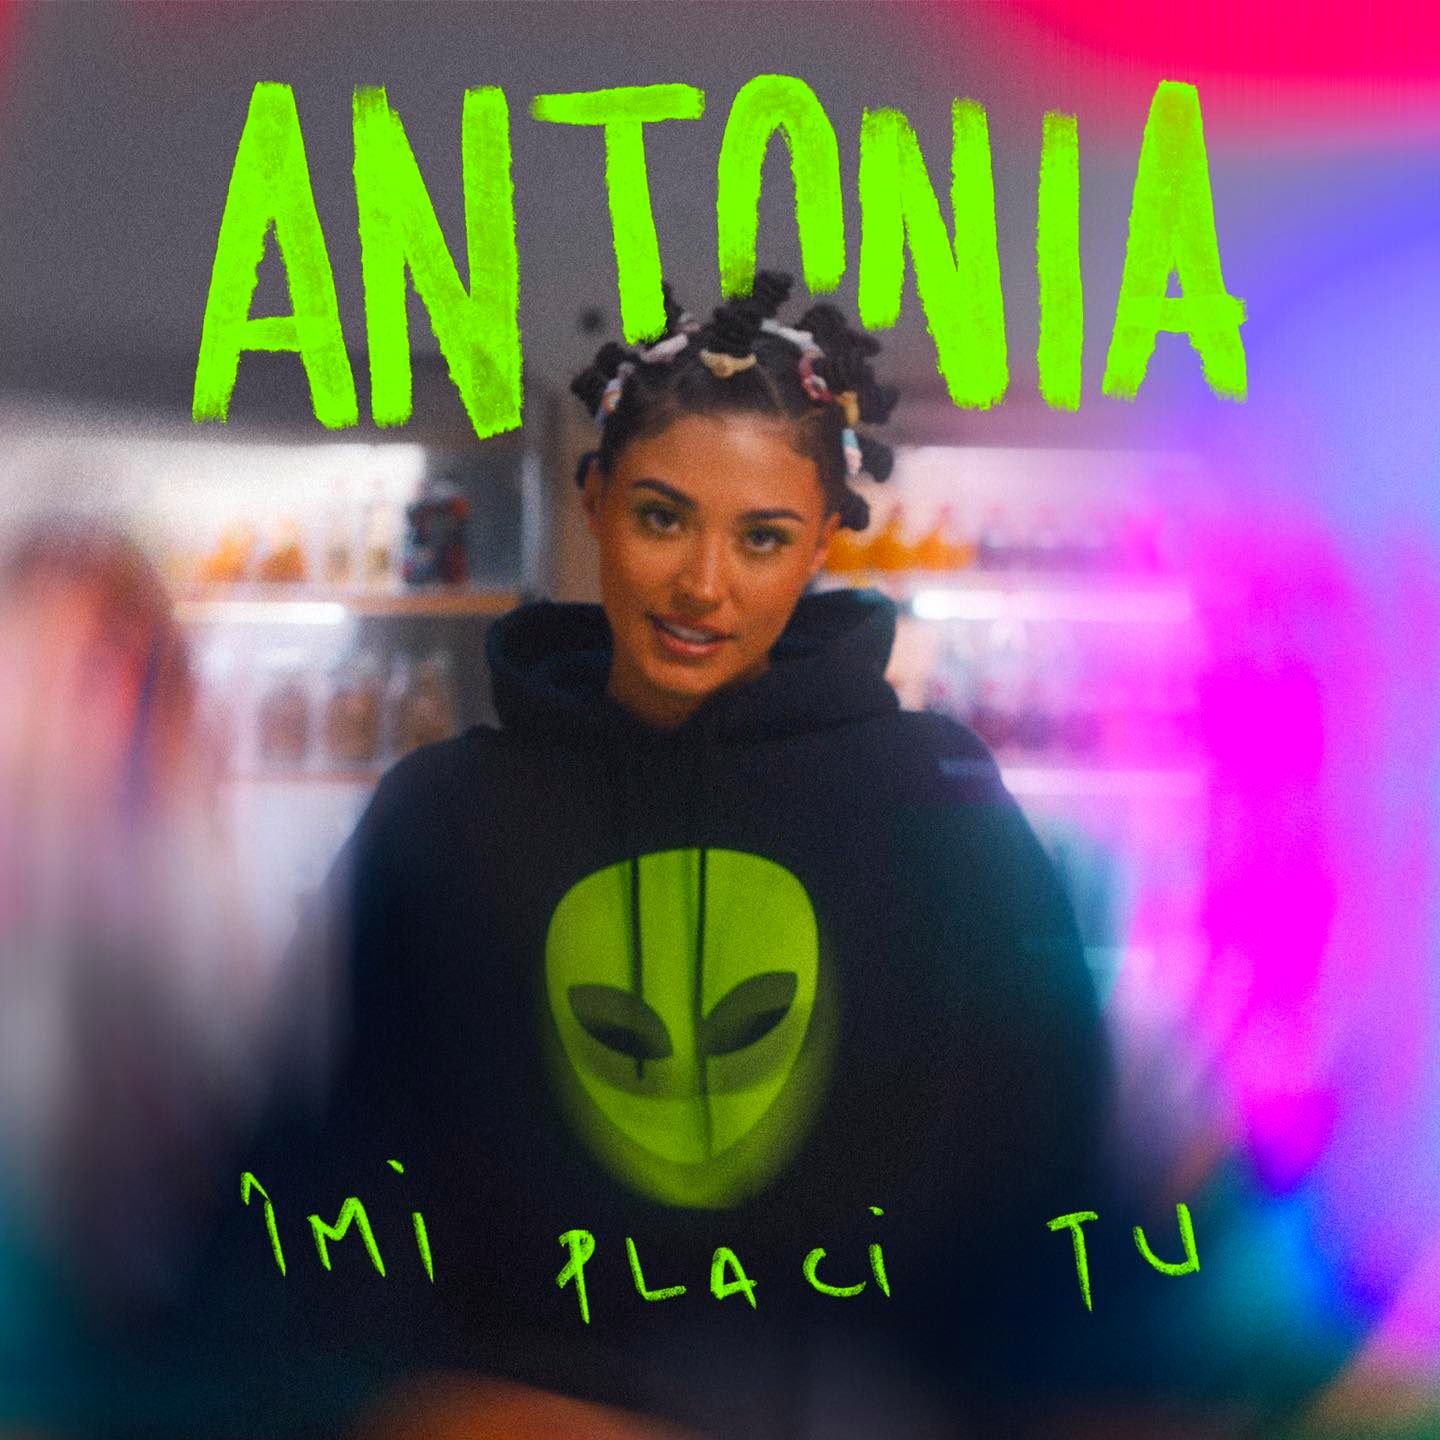 De pus pe repeat. Antonia a lansat videoclipul piesei ”Îmi placi tu”. I-ai dat play?